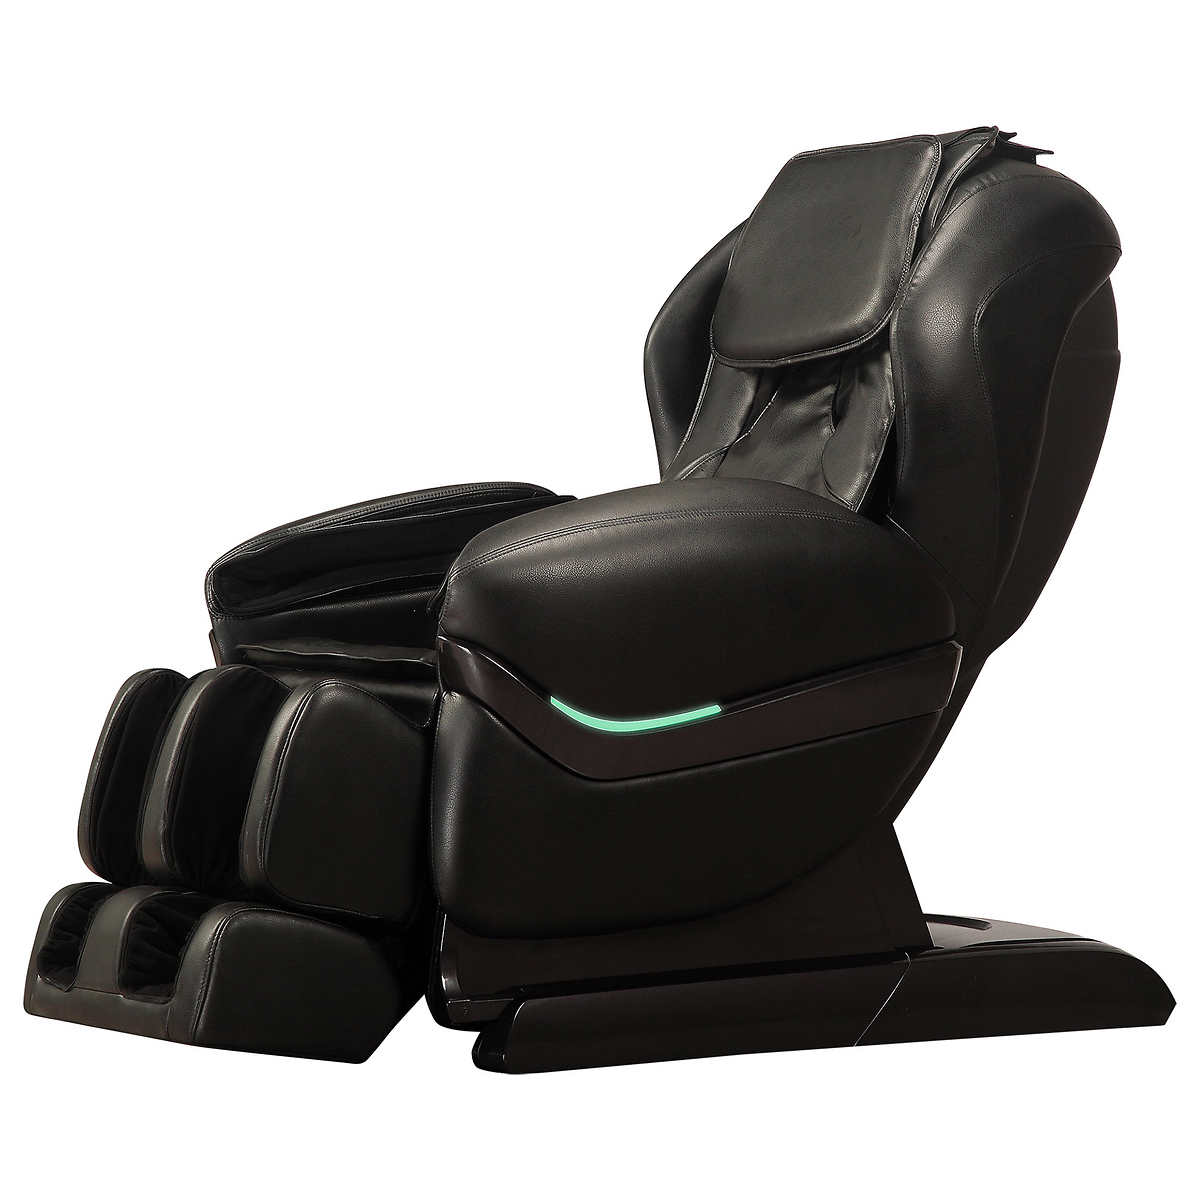 Icomfort Ic3800 Zero Gravity Massage Chair Costco